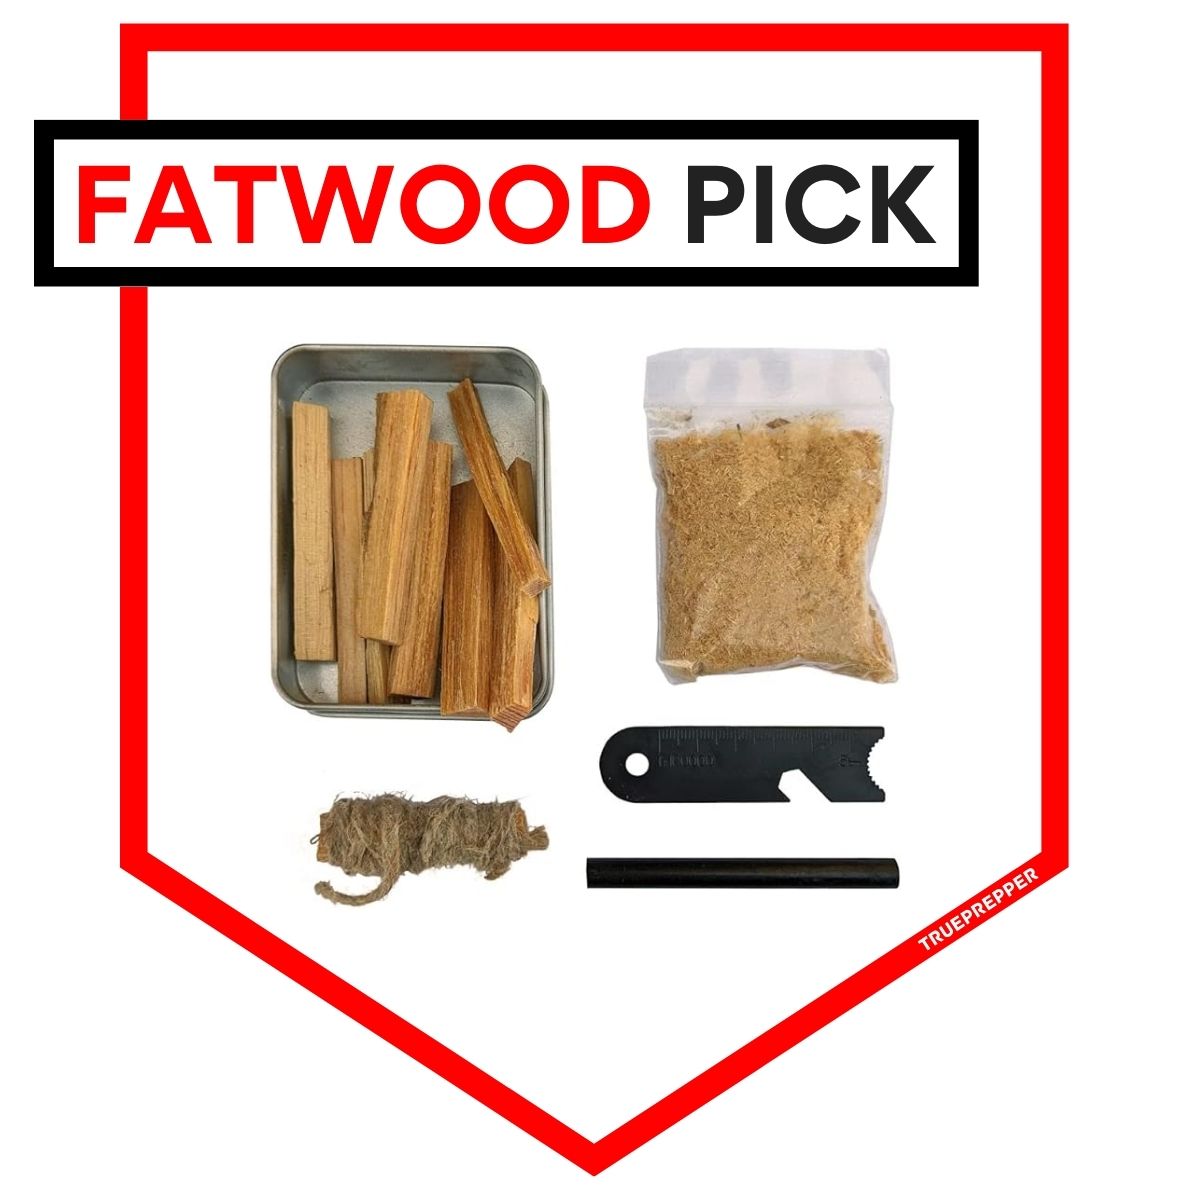 Steve Kaeser Fatwood Fire Starting Kit